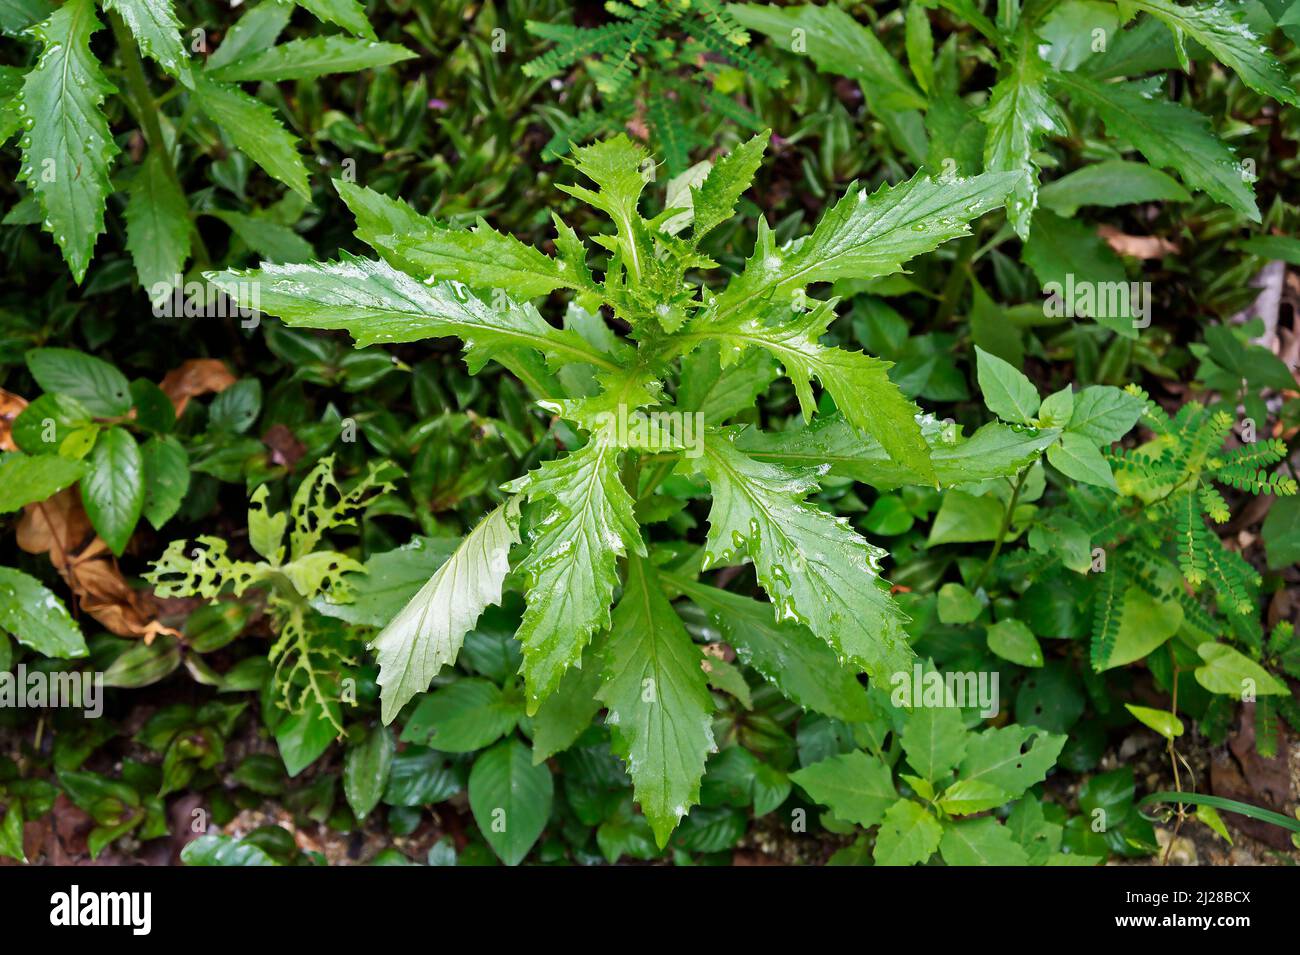 American burnweed (Erechtites hieracifolia) Stock Photo